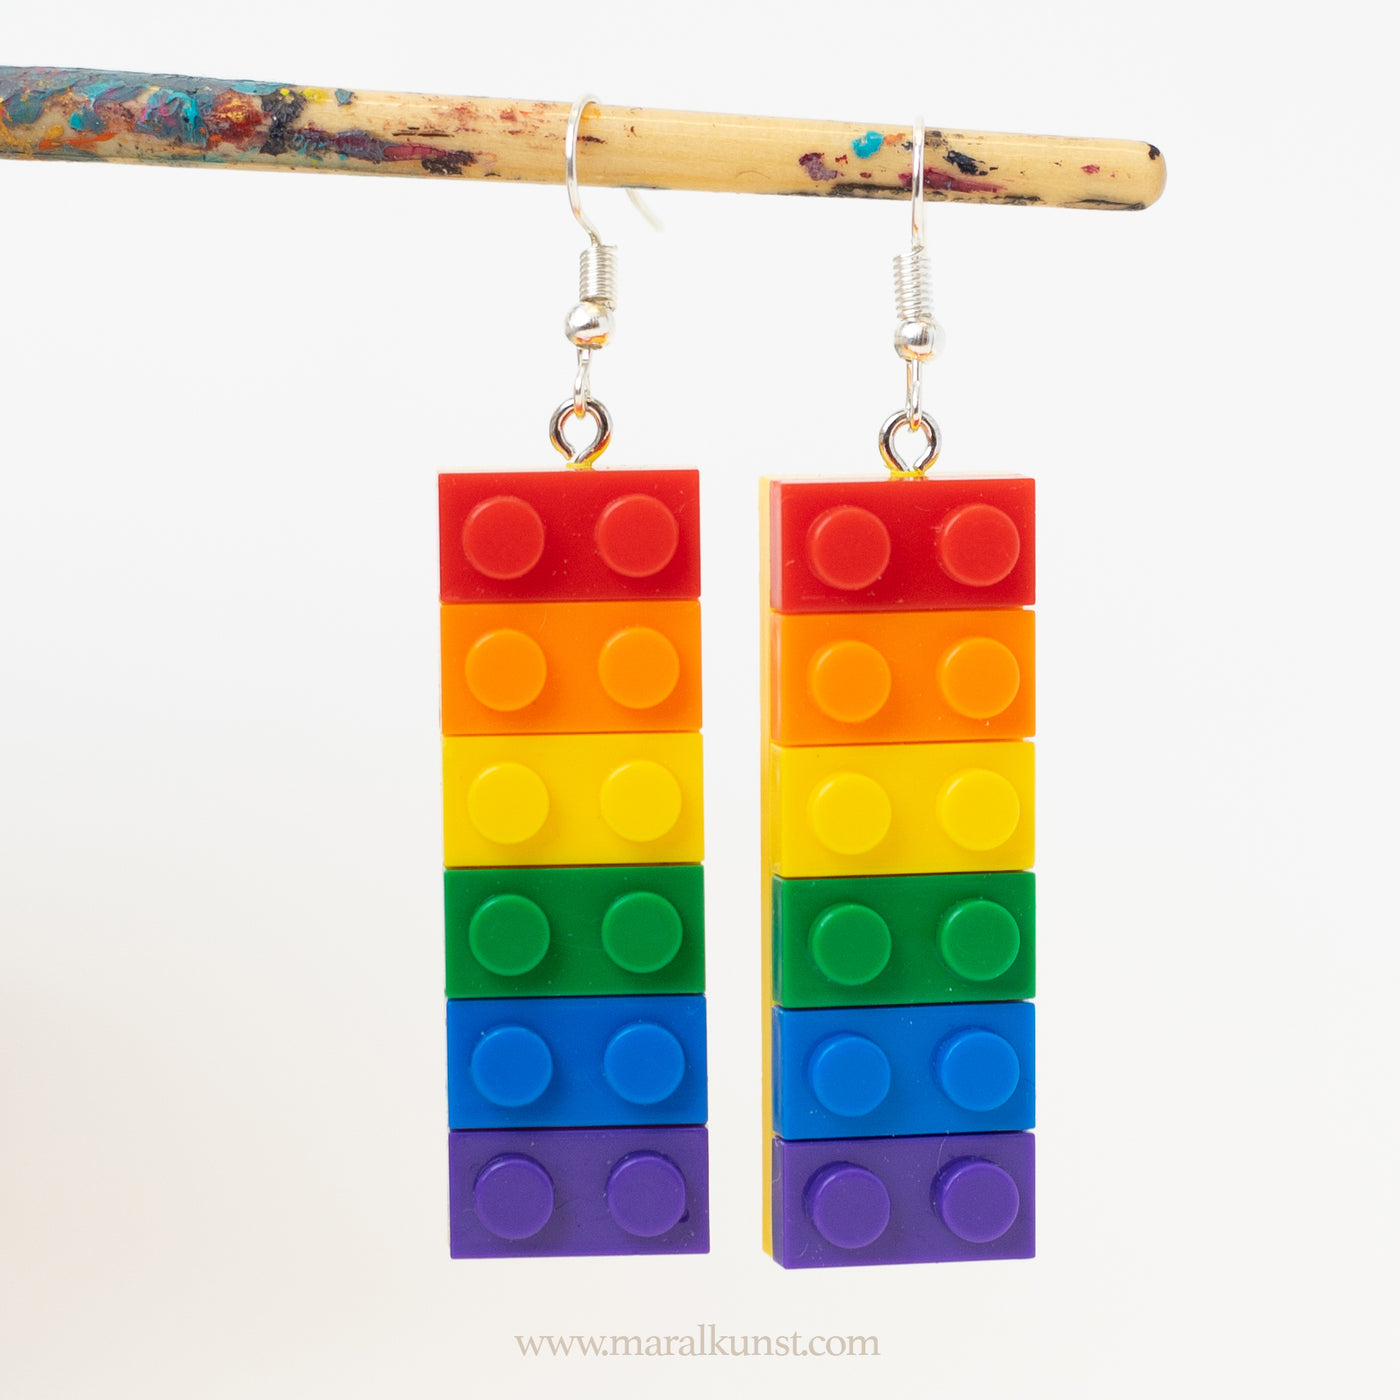 Lego earrings